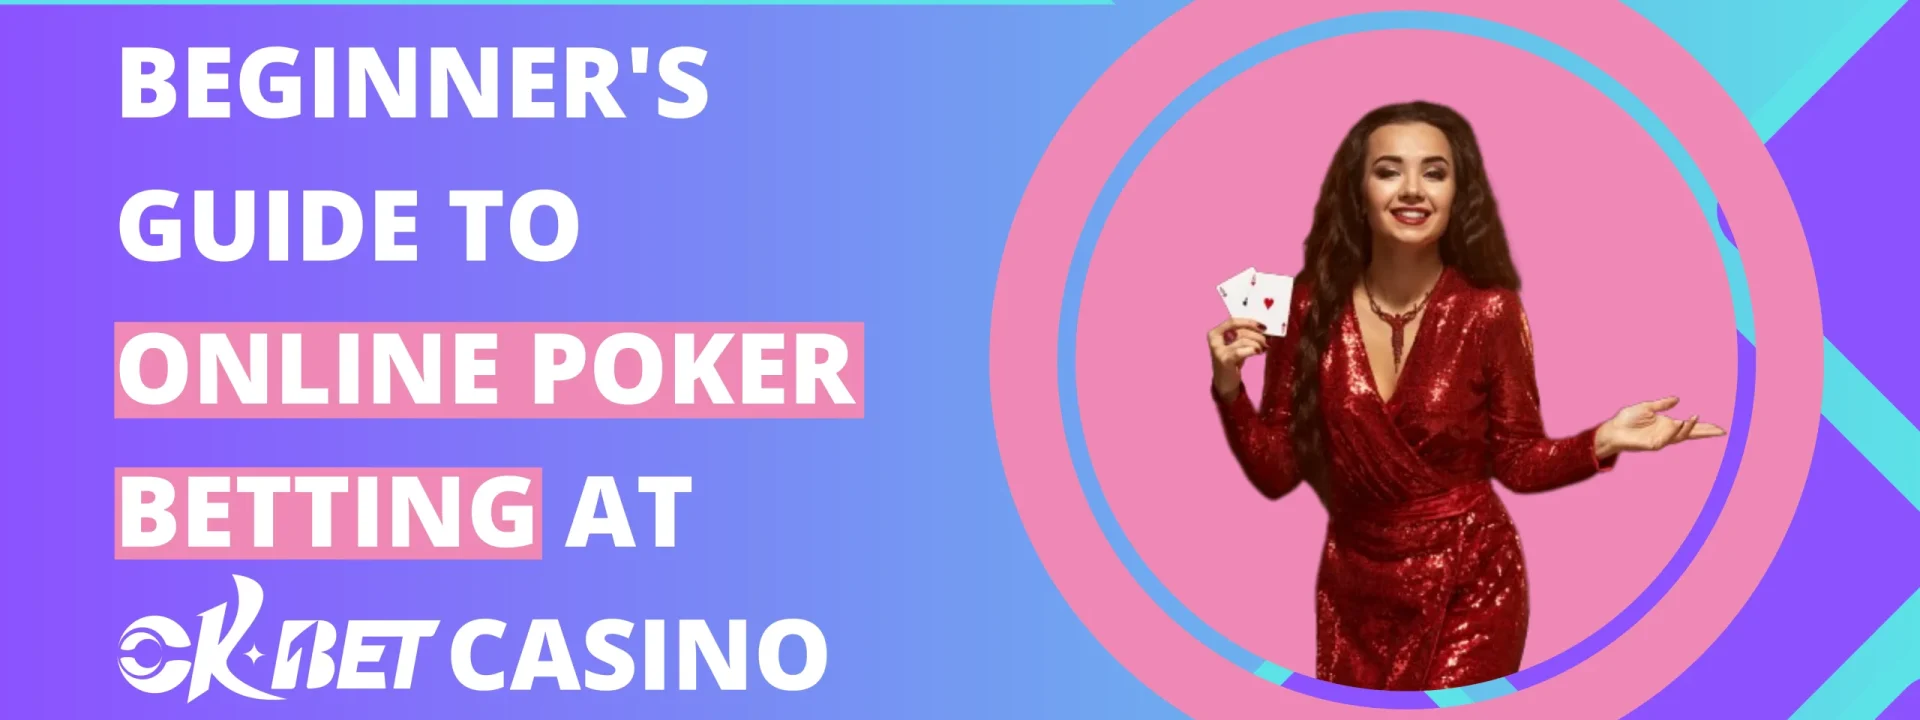 Beginner's Guide To Online Poker Betting At OKBET Casino